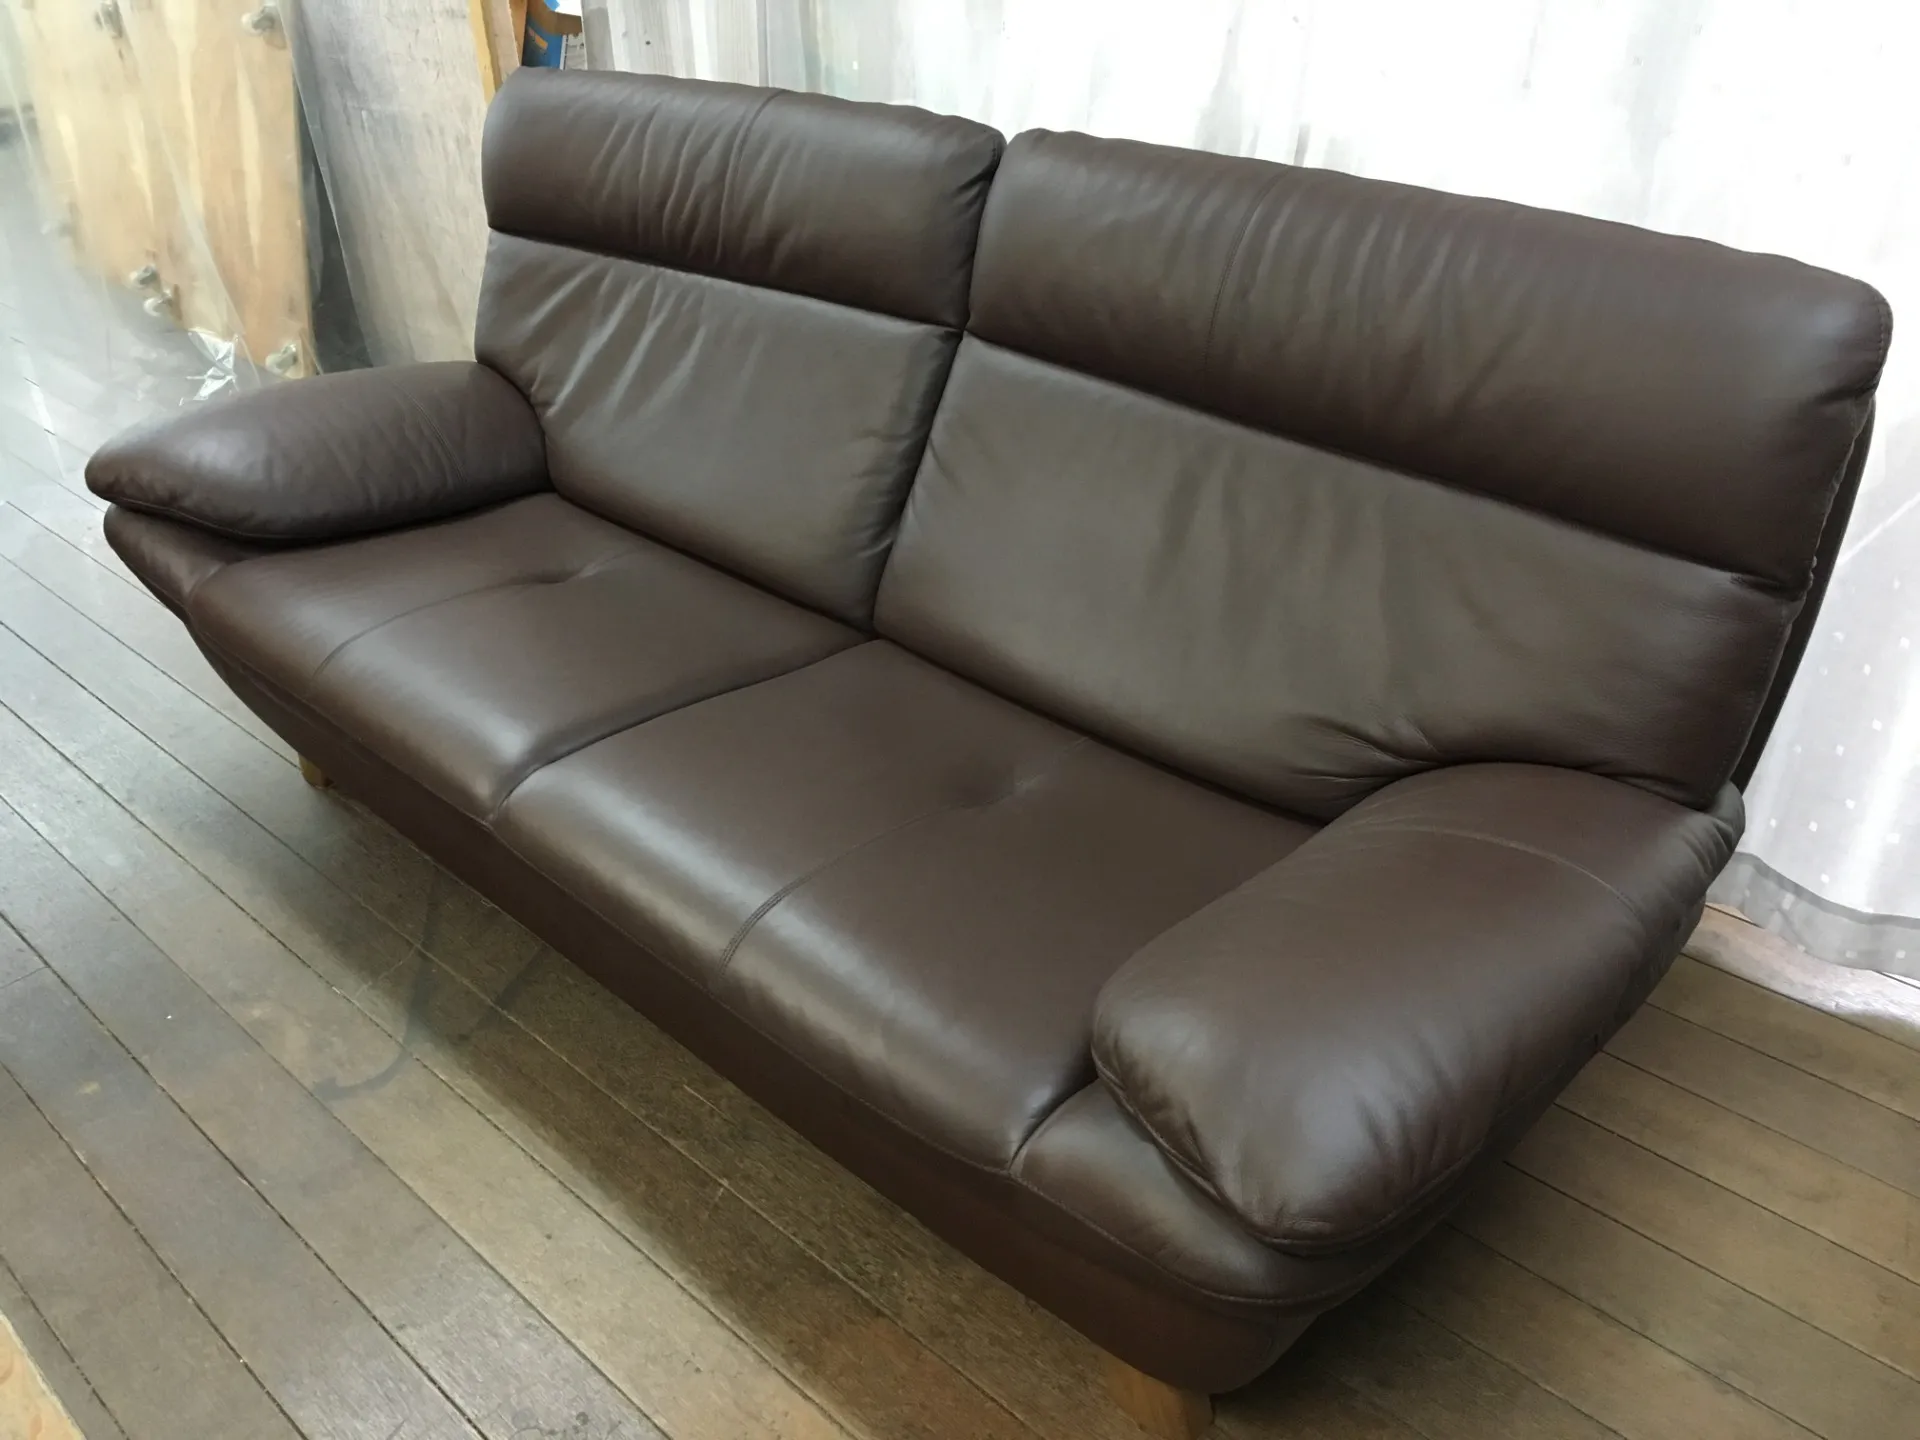 日本製のソファで評判の高いメーカーと言えば、カリモク家具